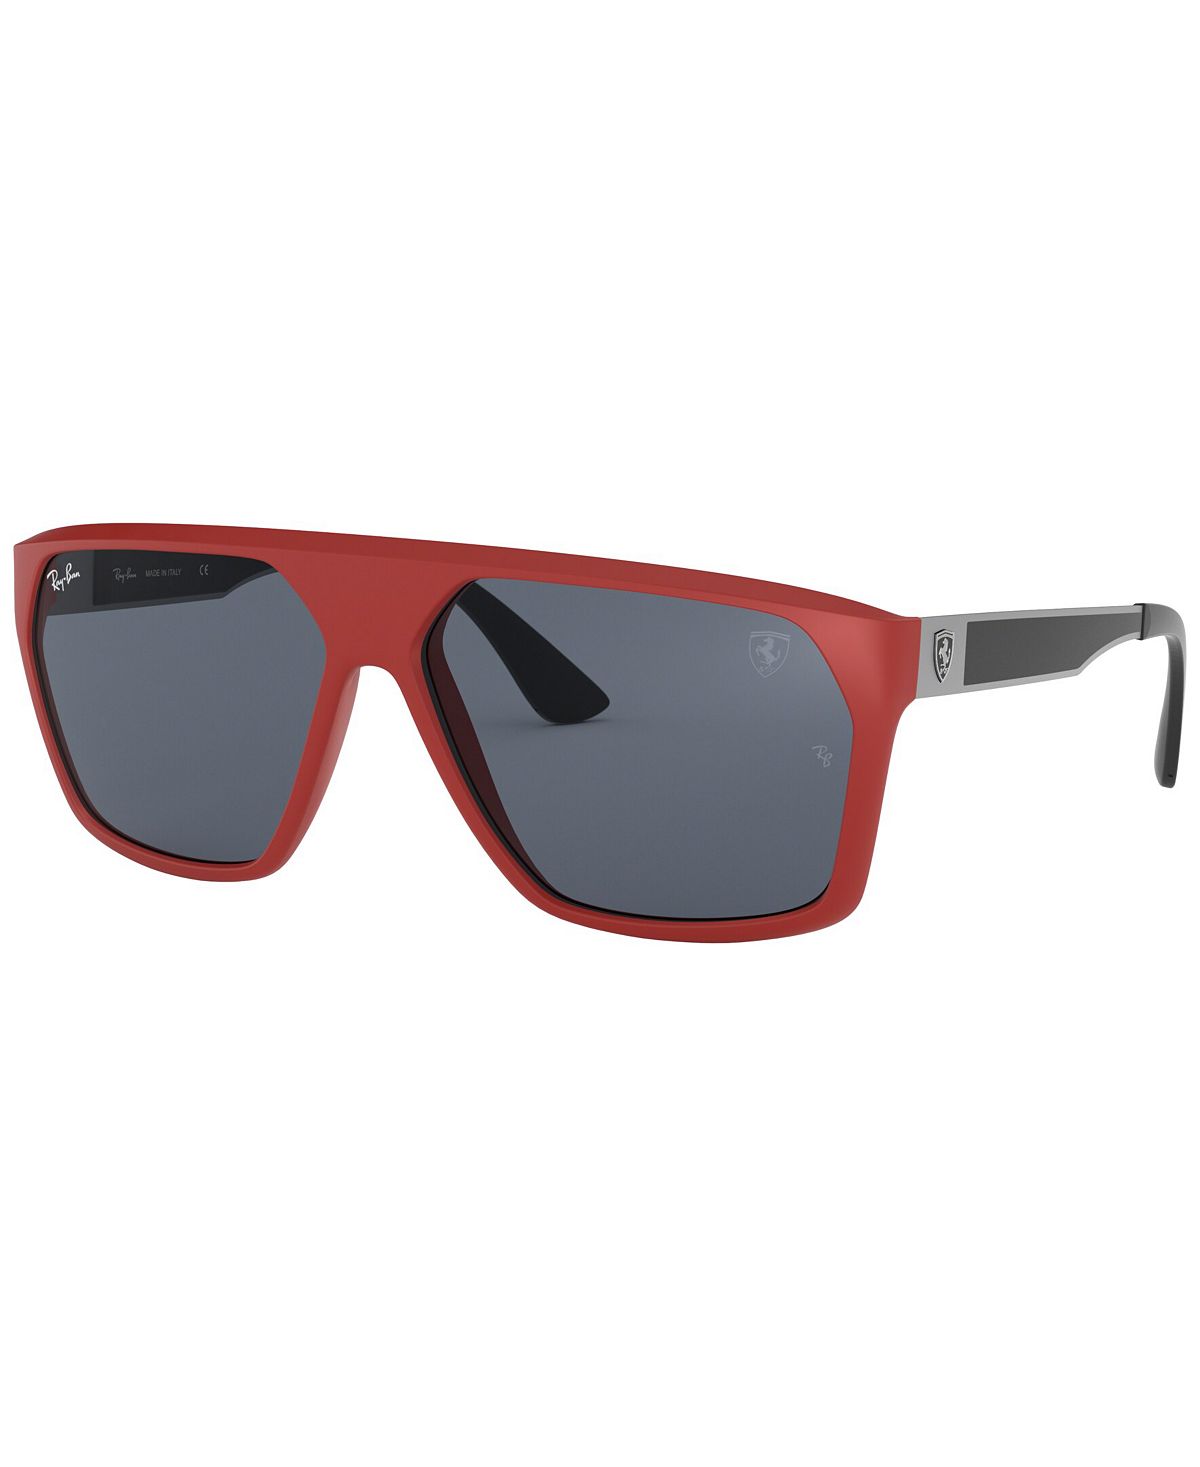 Мужские солнцезащитные очки, RB4309M Scuderia Ferrari Collection 60 Ray-Ban